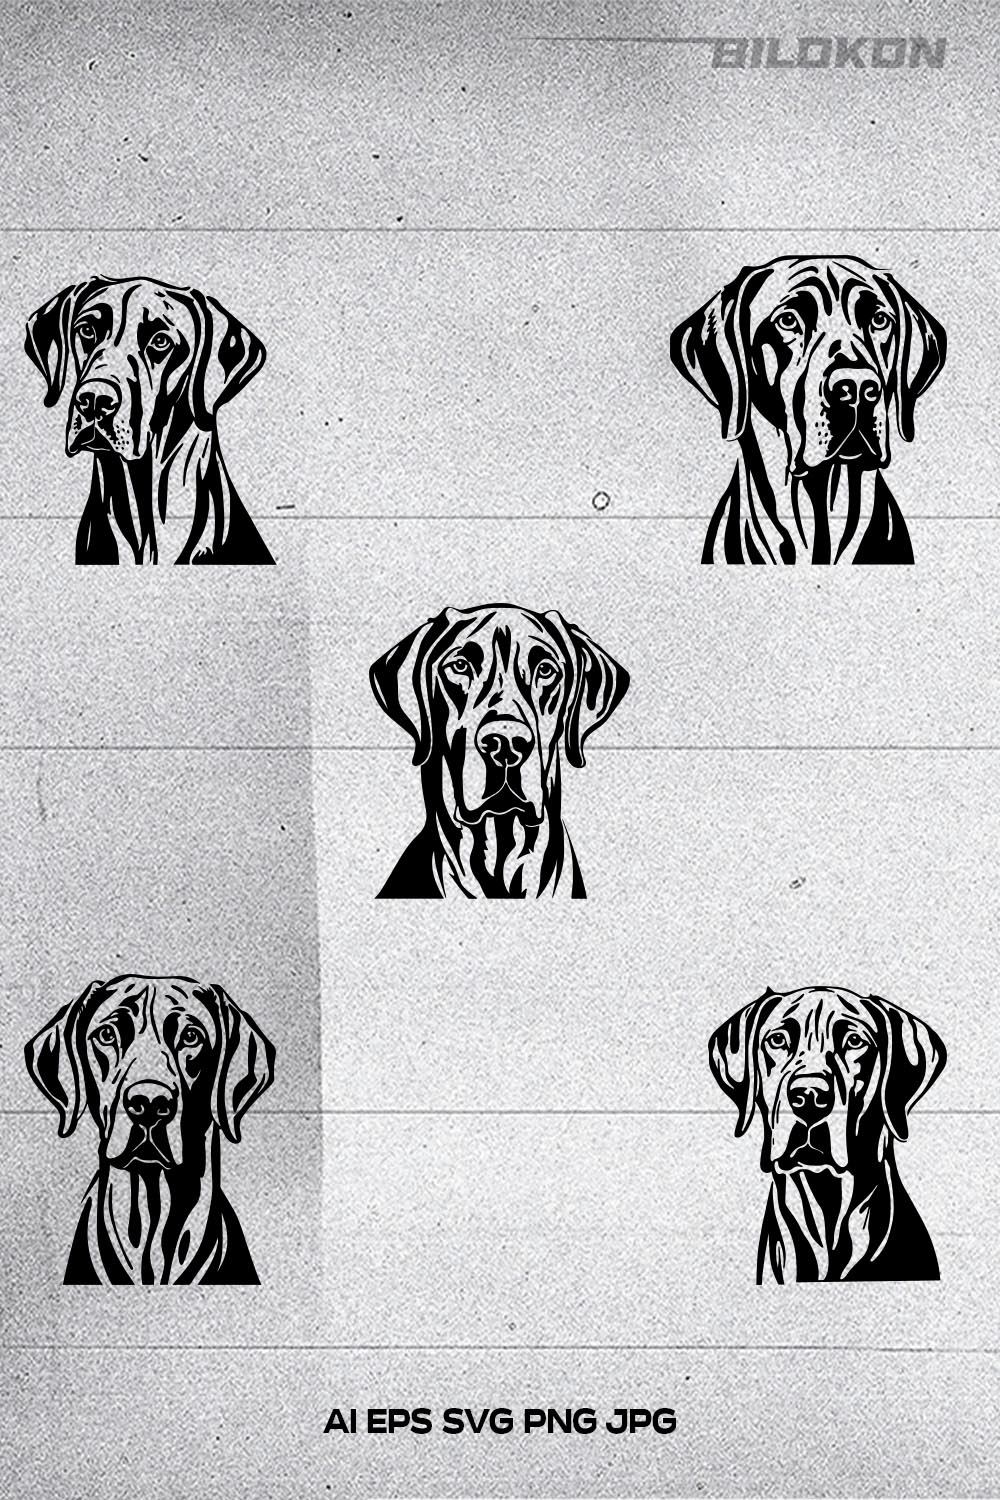 Great Dane dog head, SVG, Vector, Illustration, SVG Bundle pinterest preview image.